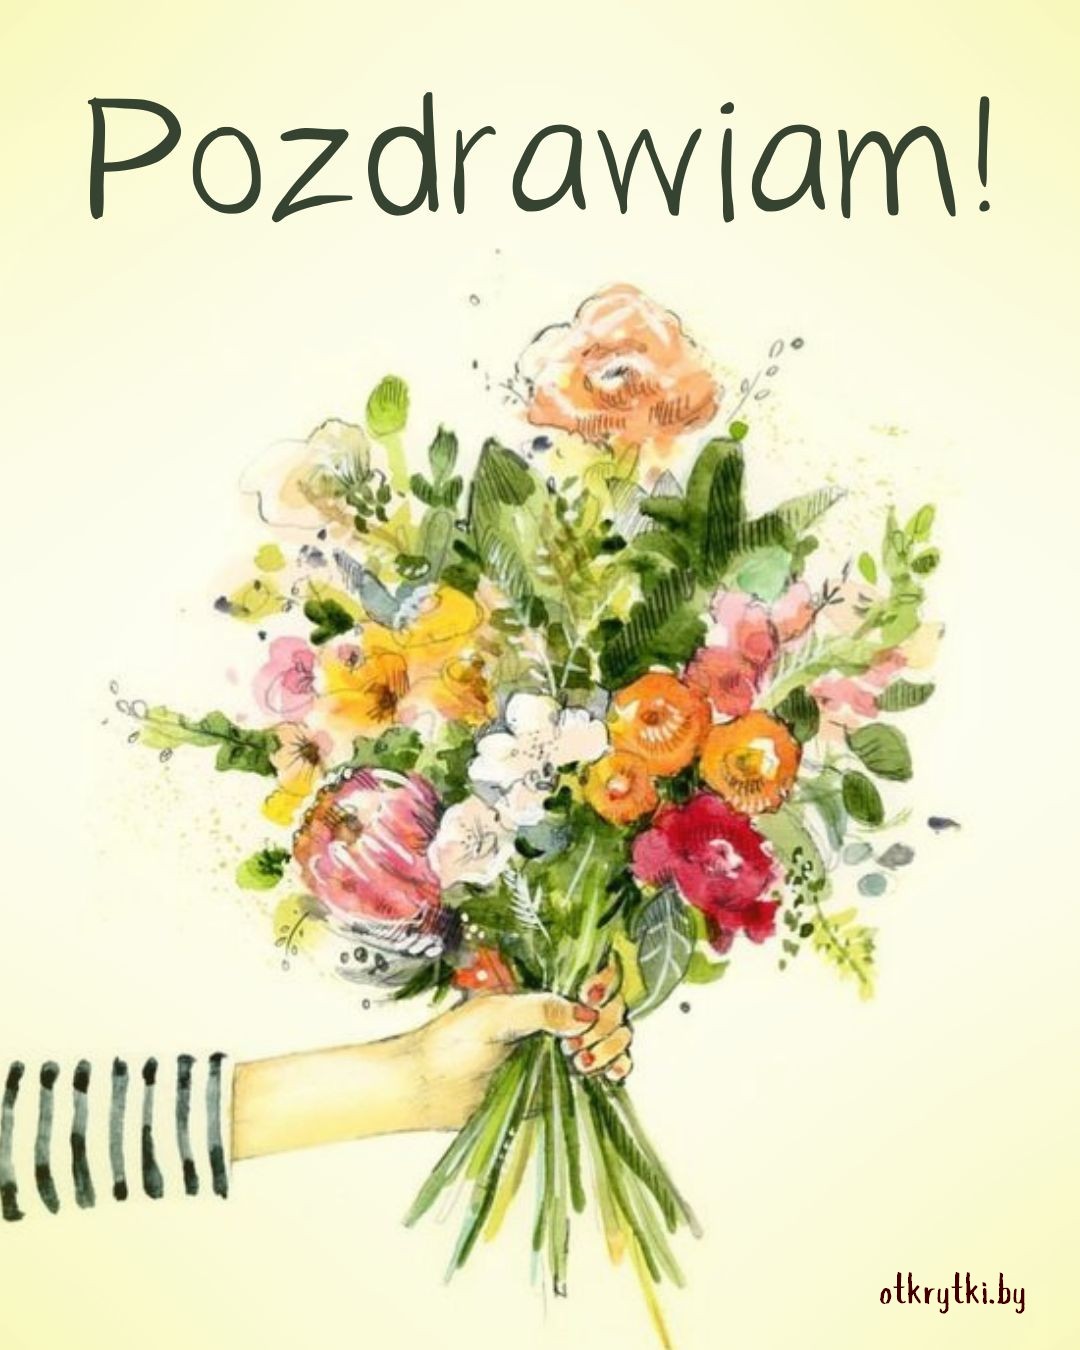 Картинка поздравления на польском